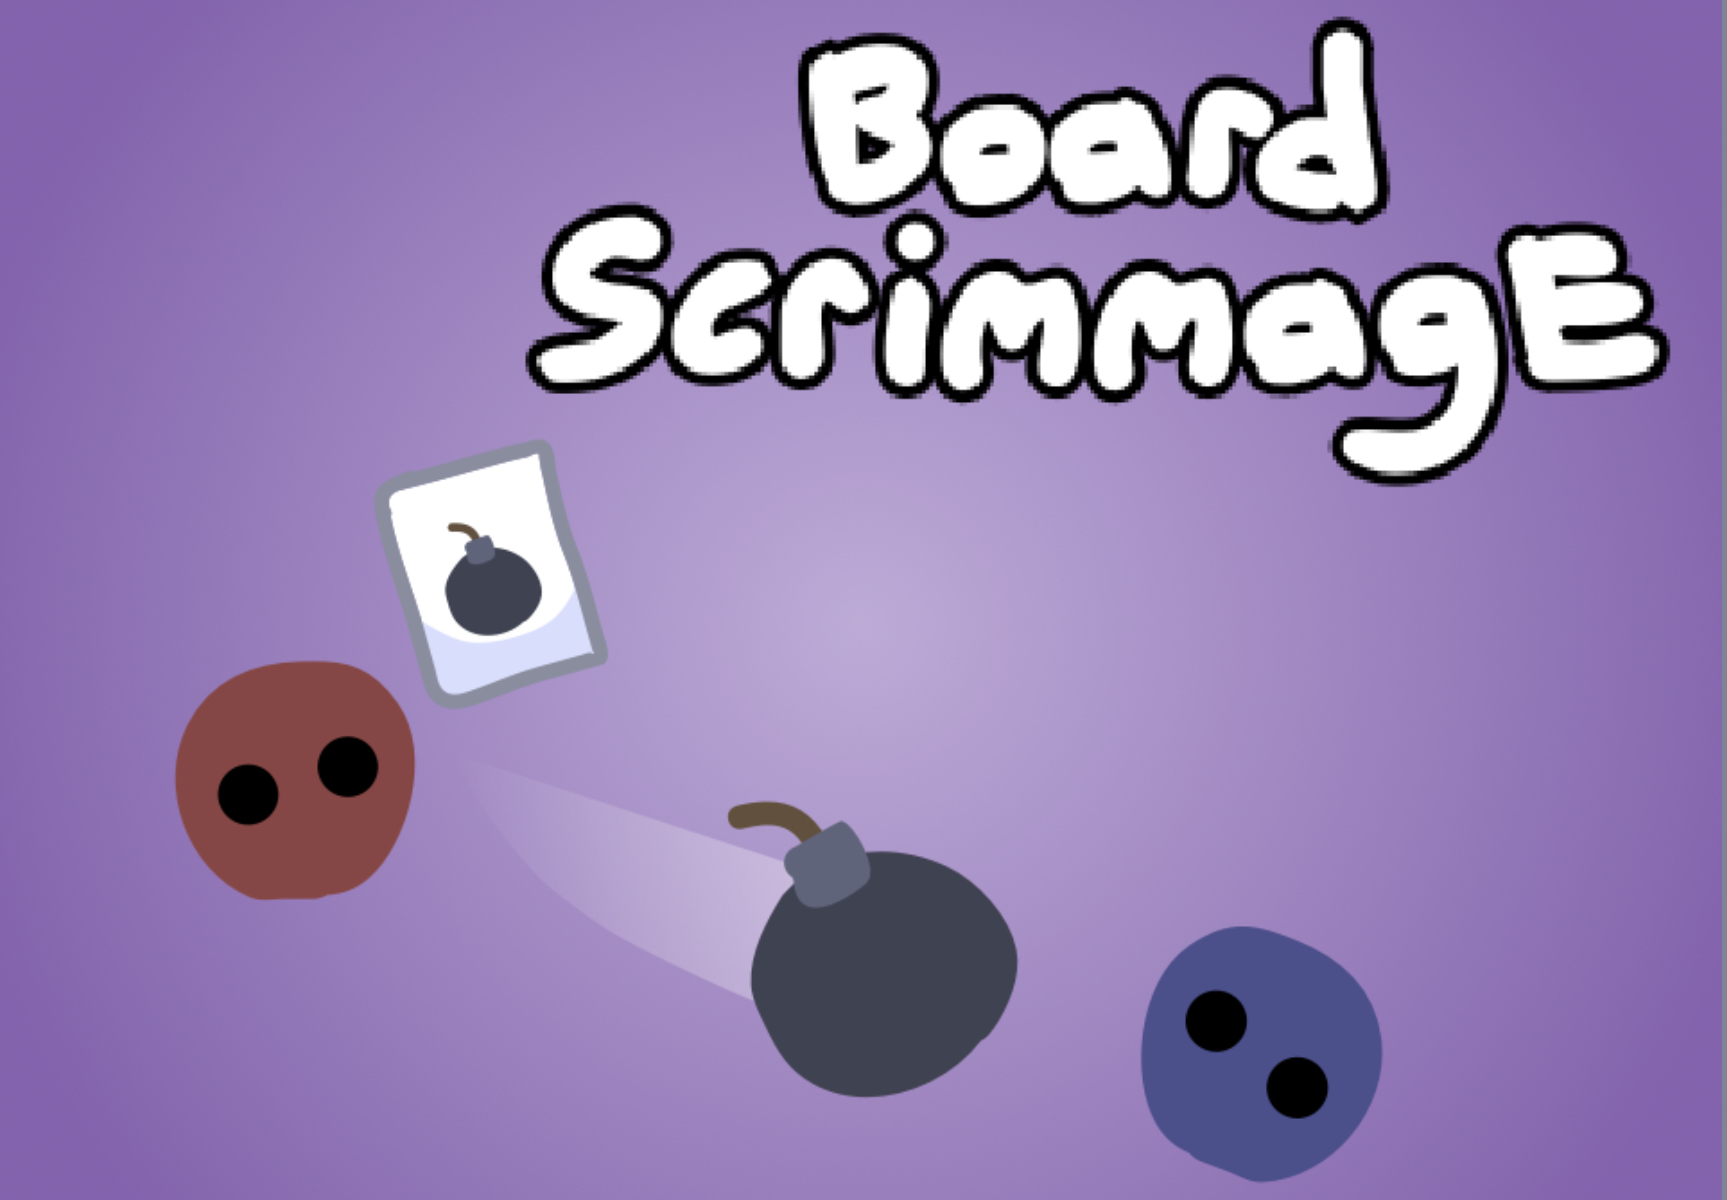 Board Scrimmage